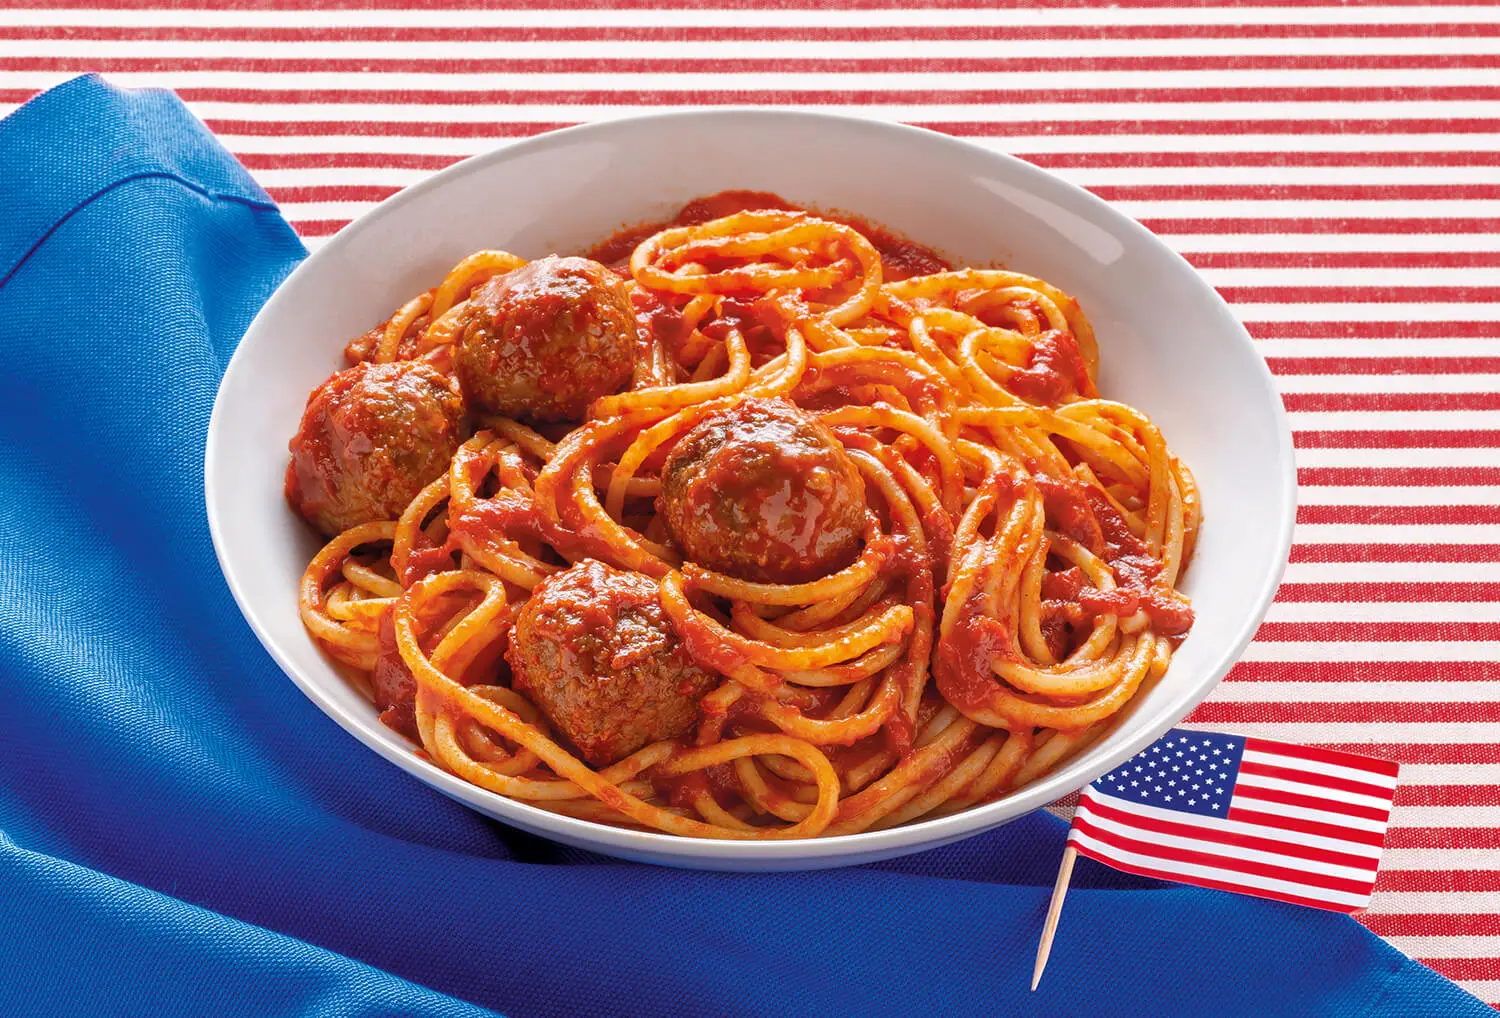 Spaghetti e polpette